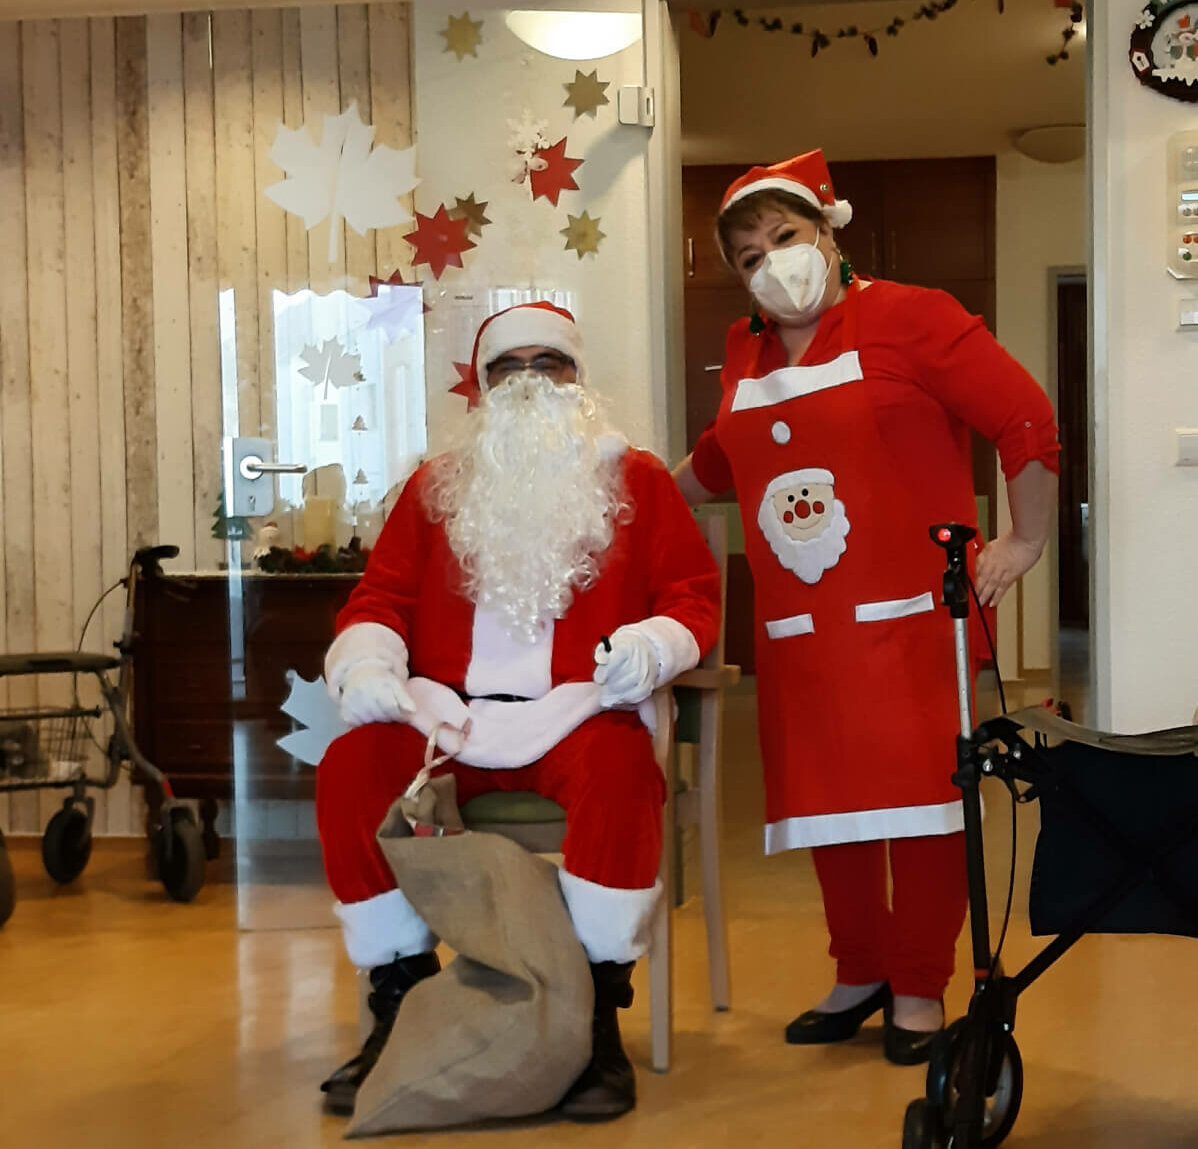 Nikolaus und Helferin sind bereit zur Geschenkevergabe an die Bewohner des Seniorenzentrums "Im Kaiserviertel" in Dortmund